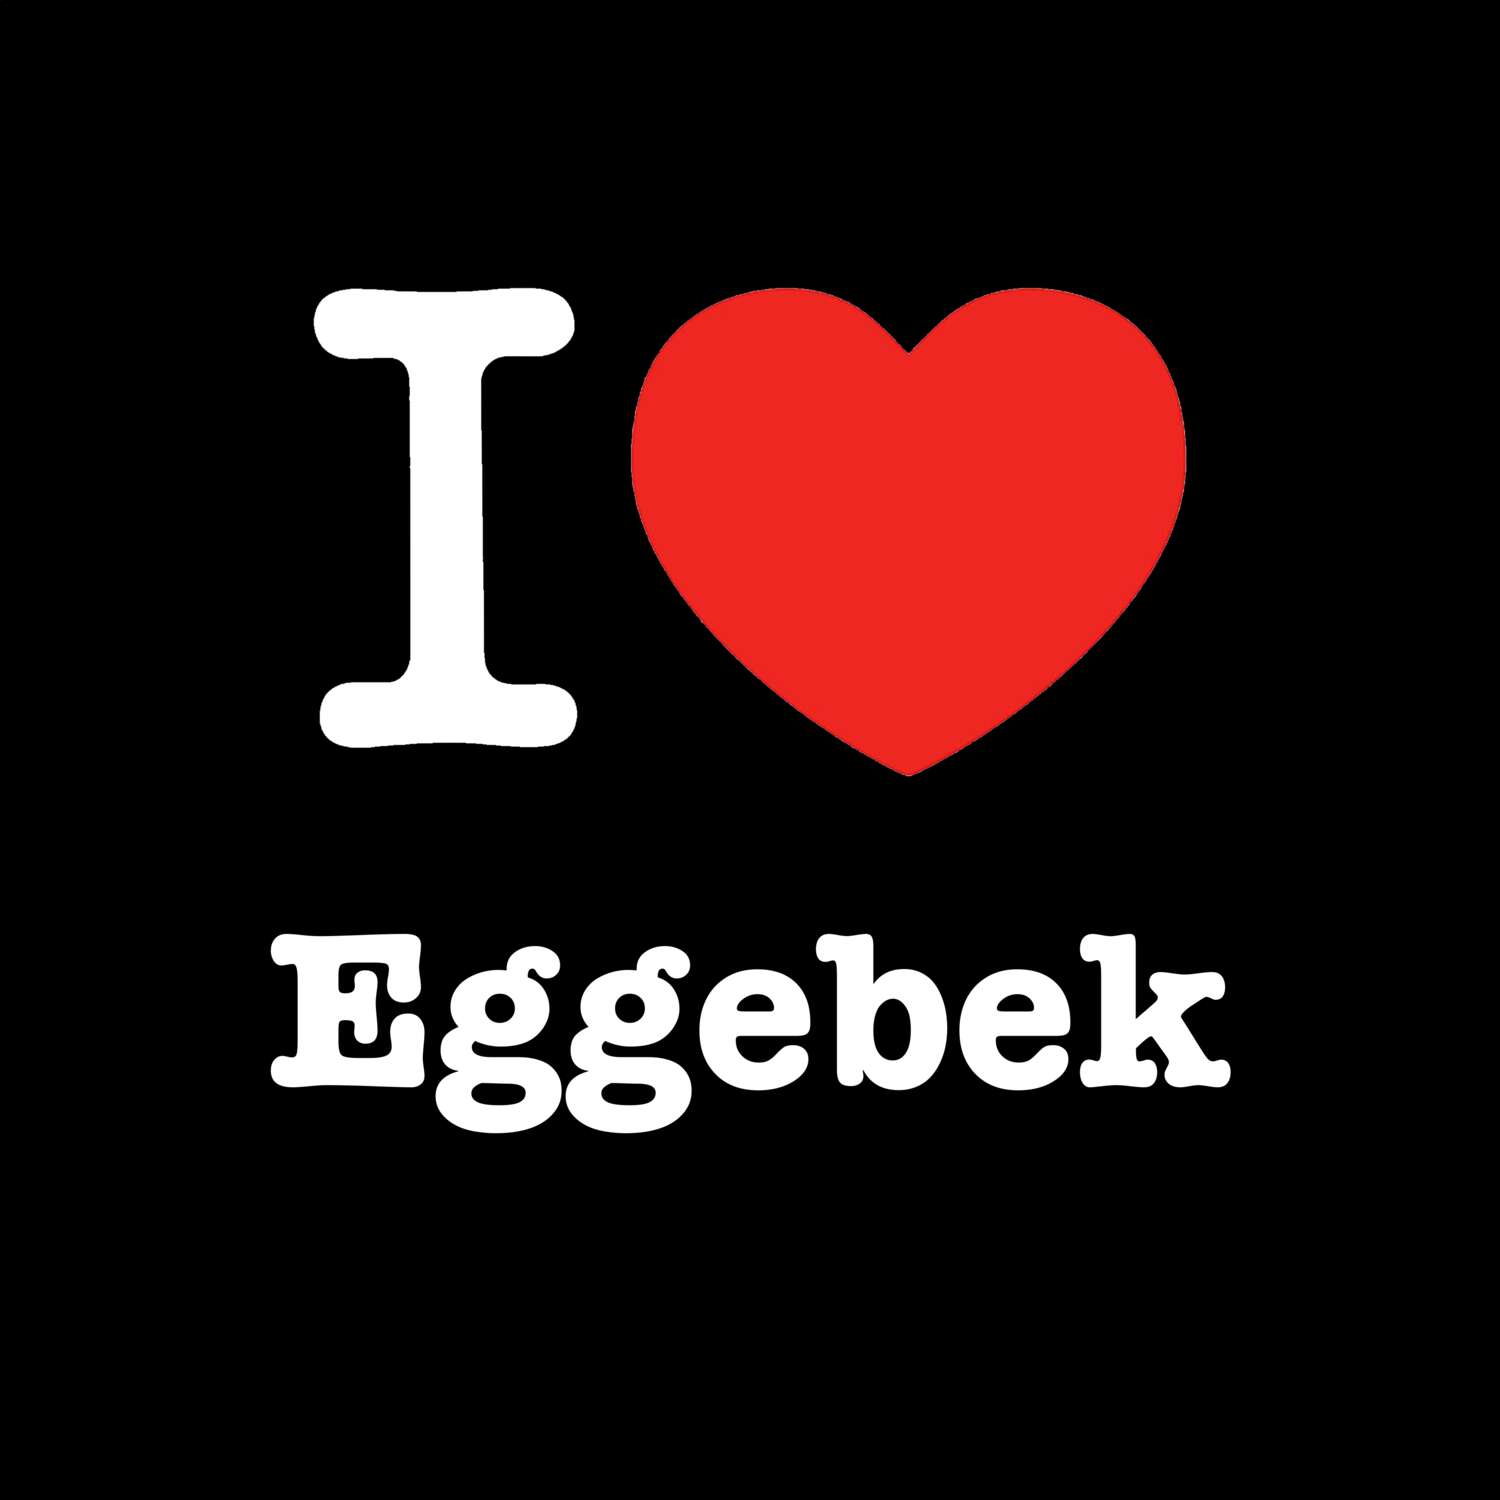 Eggebek T-Shirt »I love«